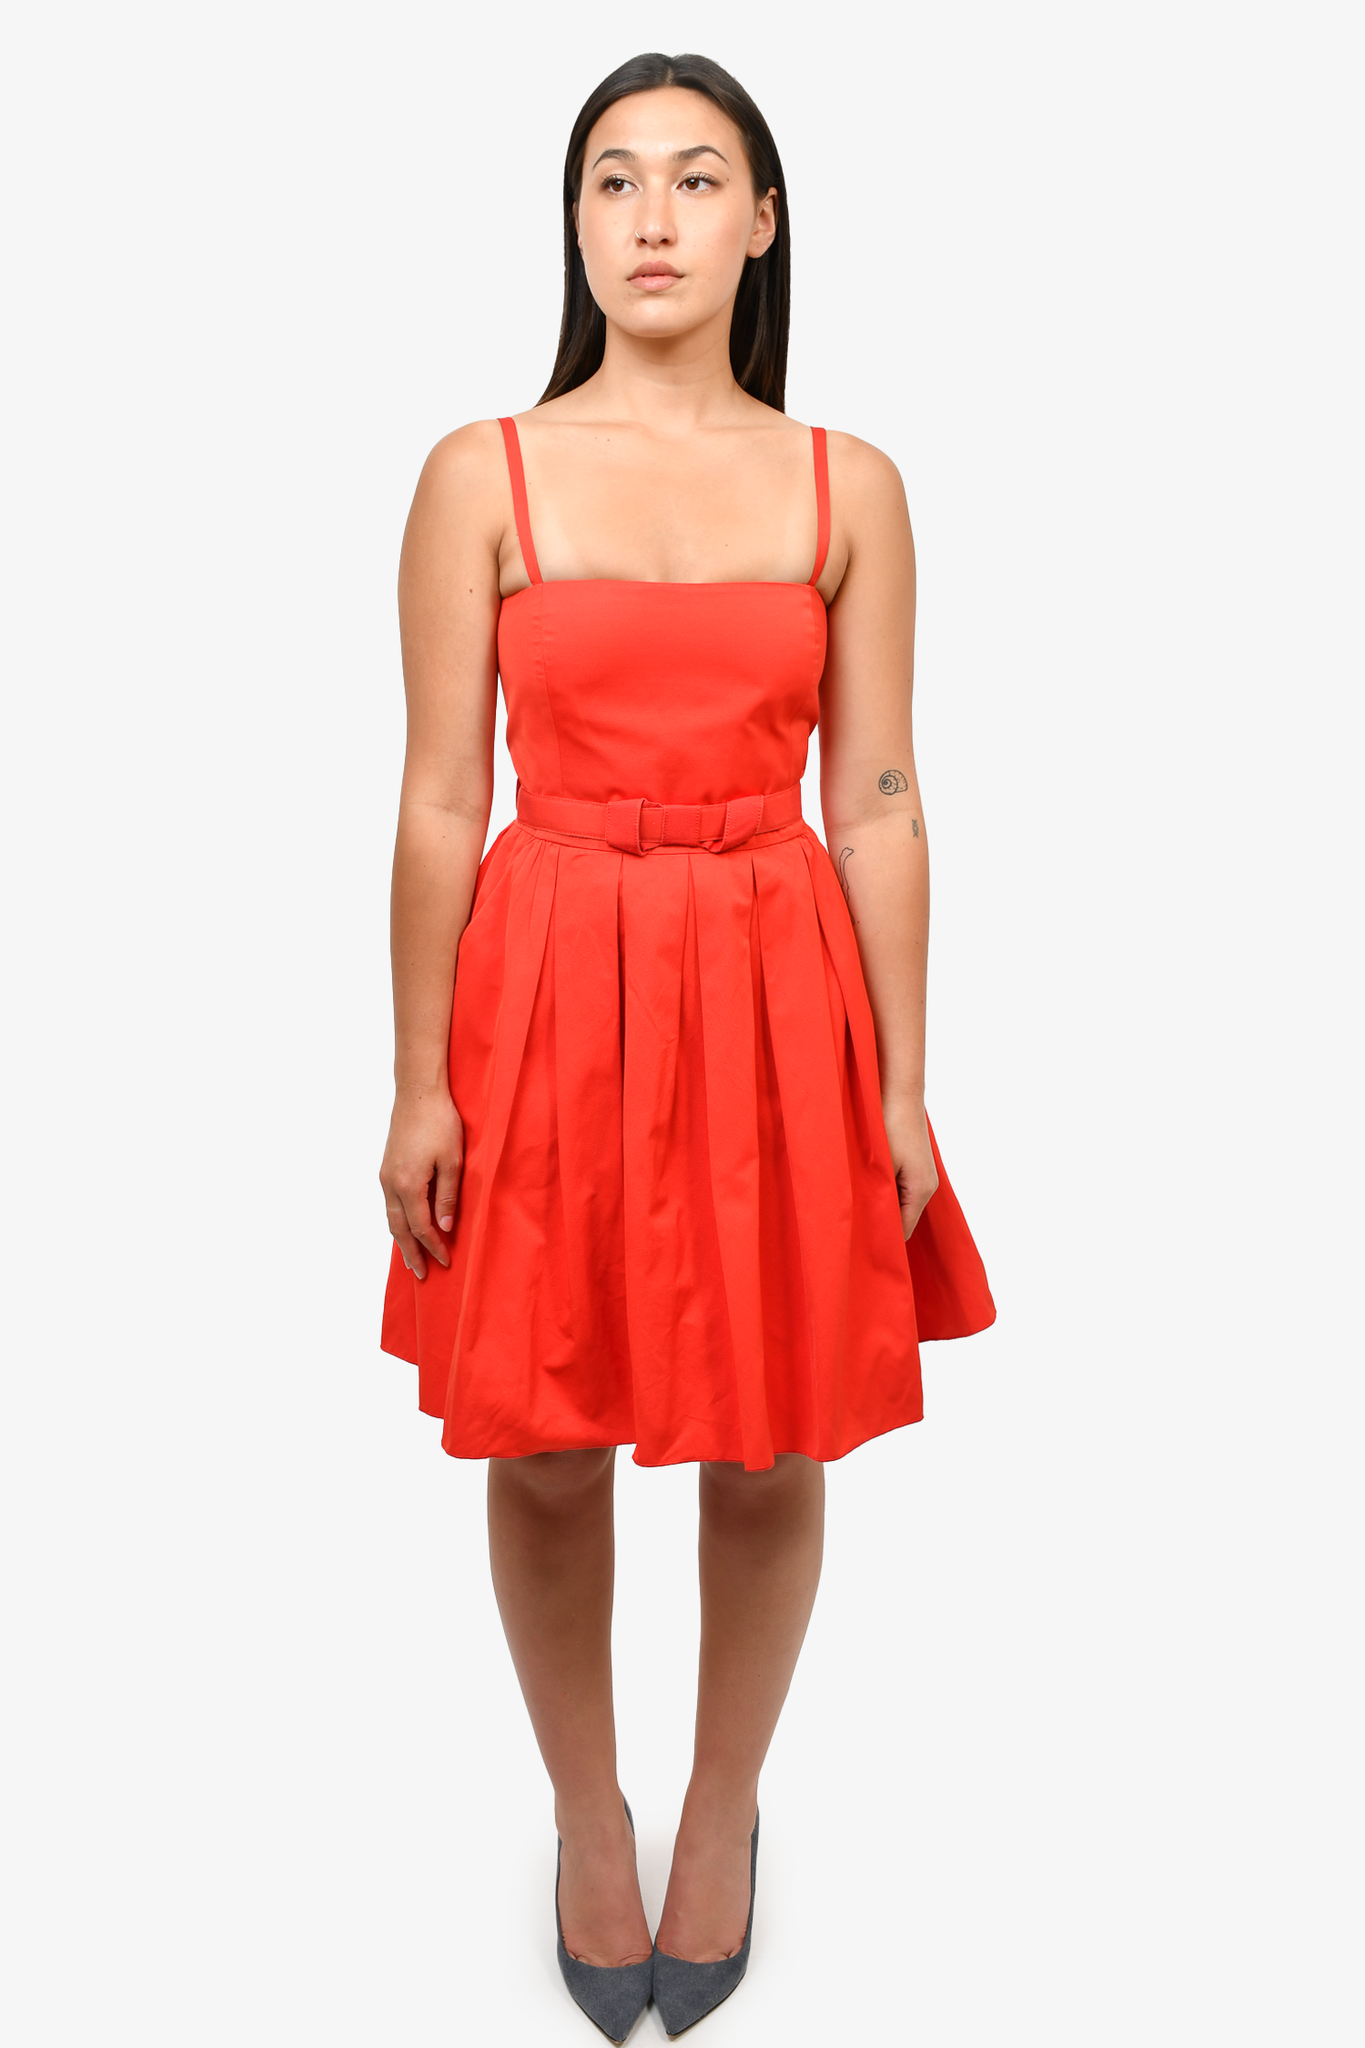 Max Mara Red Strappy Mini Dress sz 4